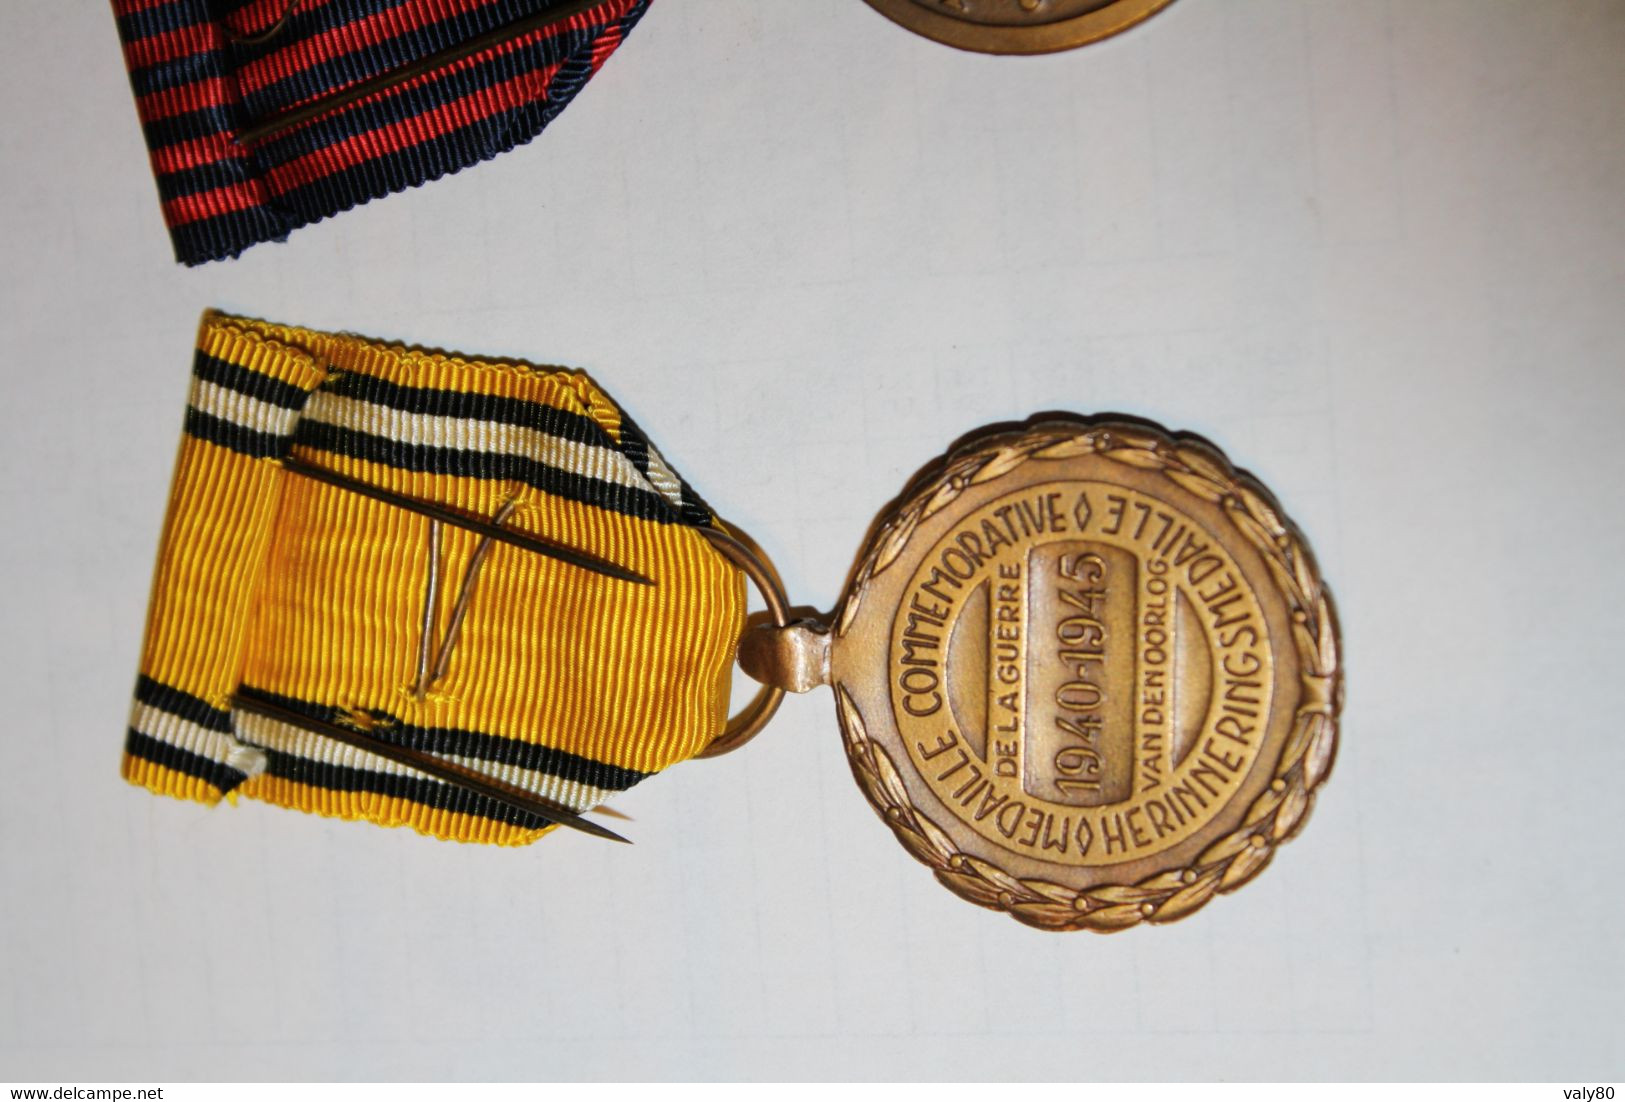 Très belle parure de médailles WW2 Belges.